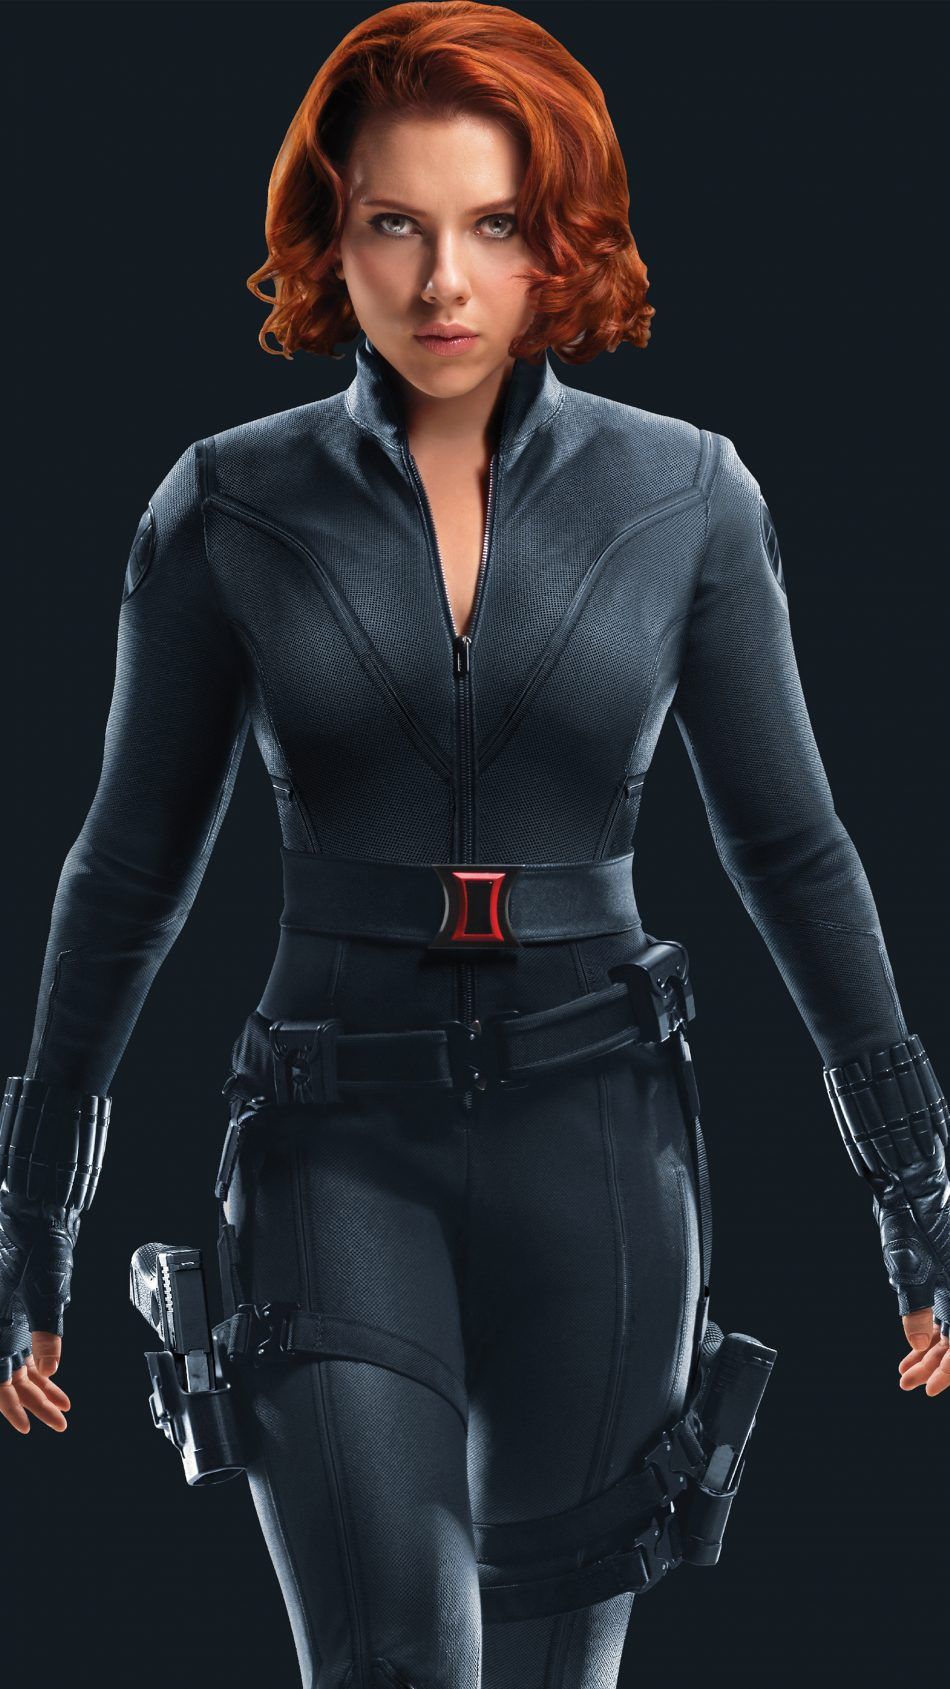 Black Widow Scarlett Johansson Superhero 4k Ultra HD Mobile